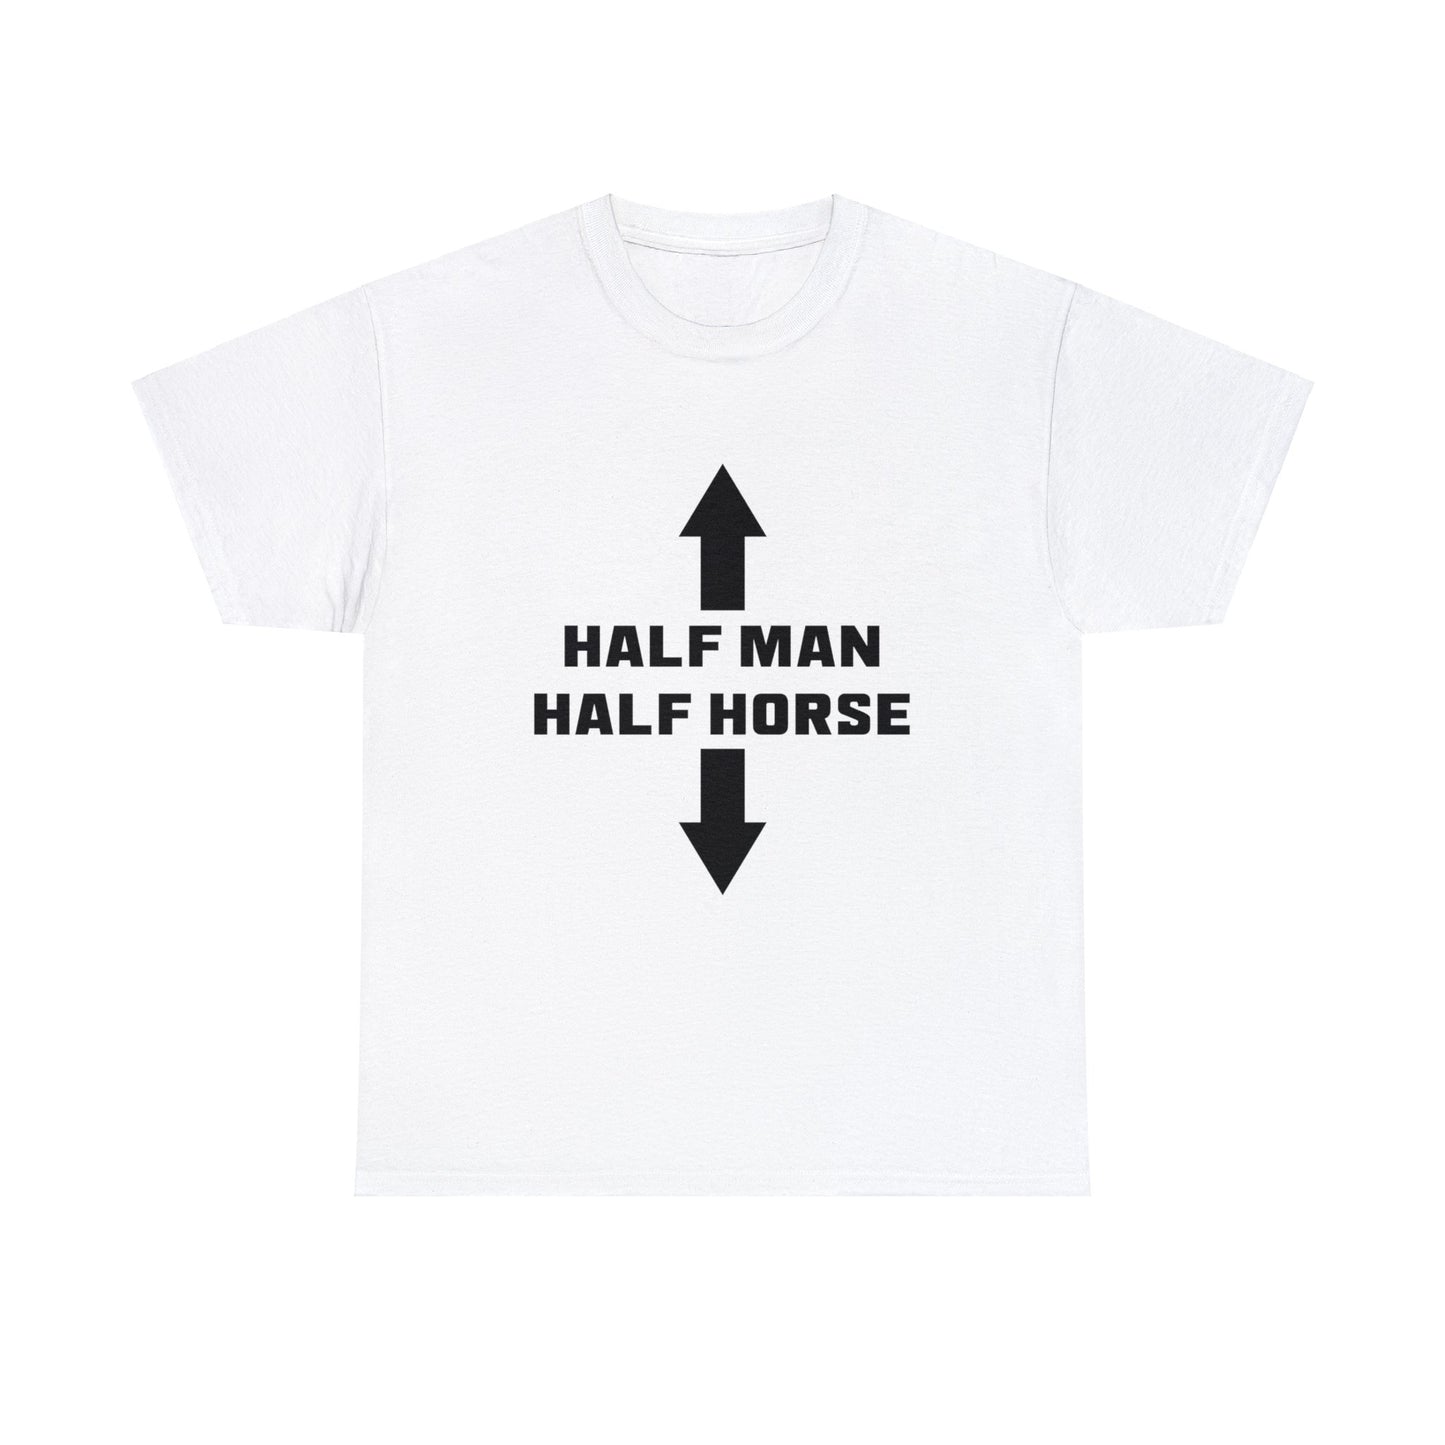 Half Man Half Horse Tee